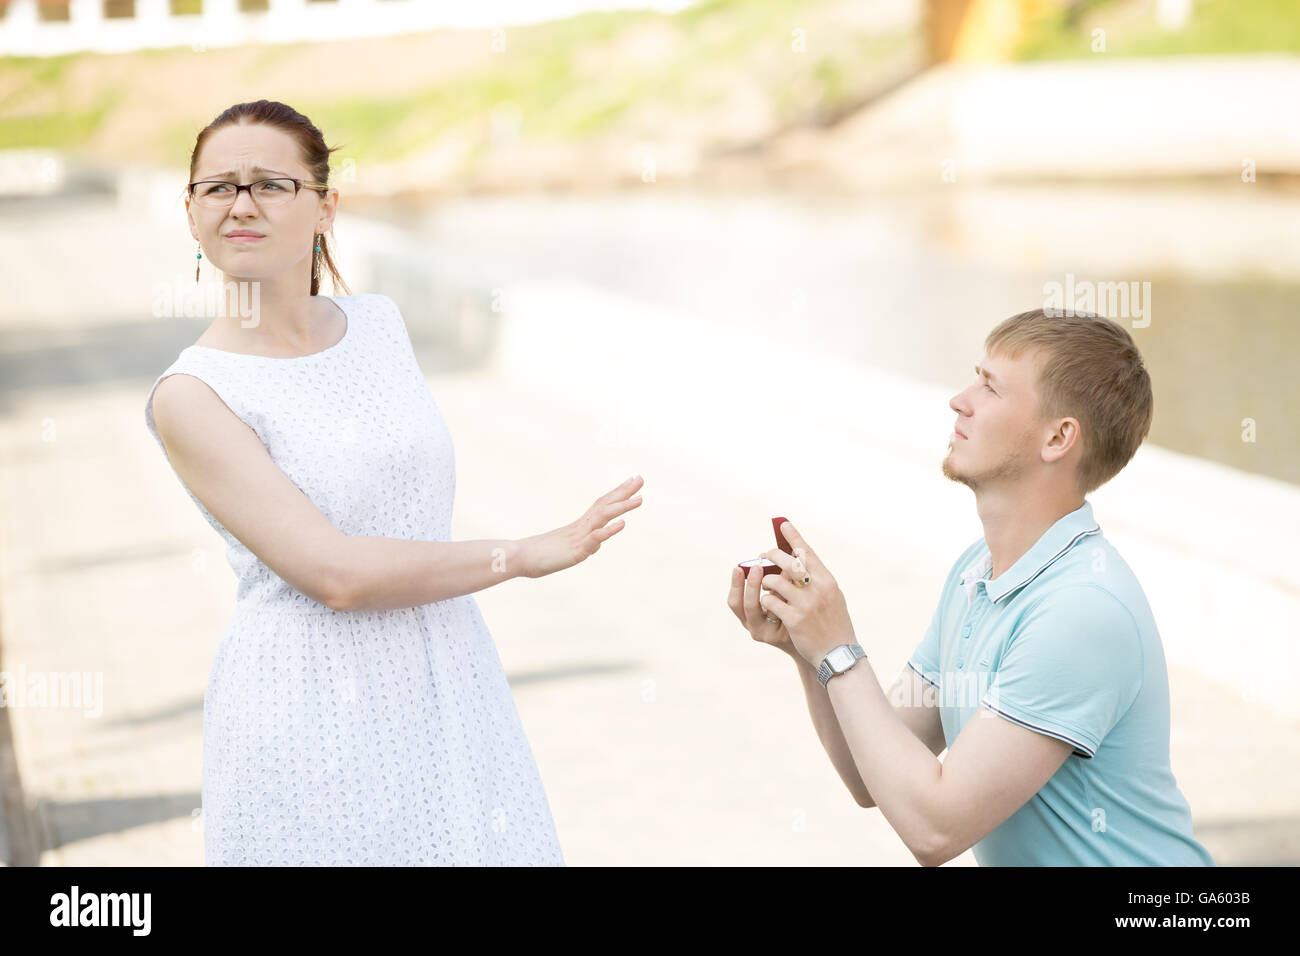 Femme refusant proposition de mariage. De graves beau jeune homme debout sur son genou offrant une boîte avec bague de fiançailles Banque D'Images